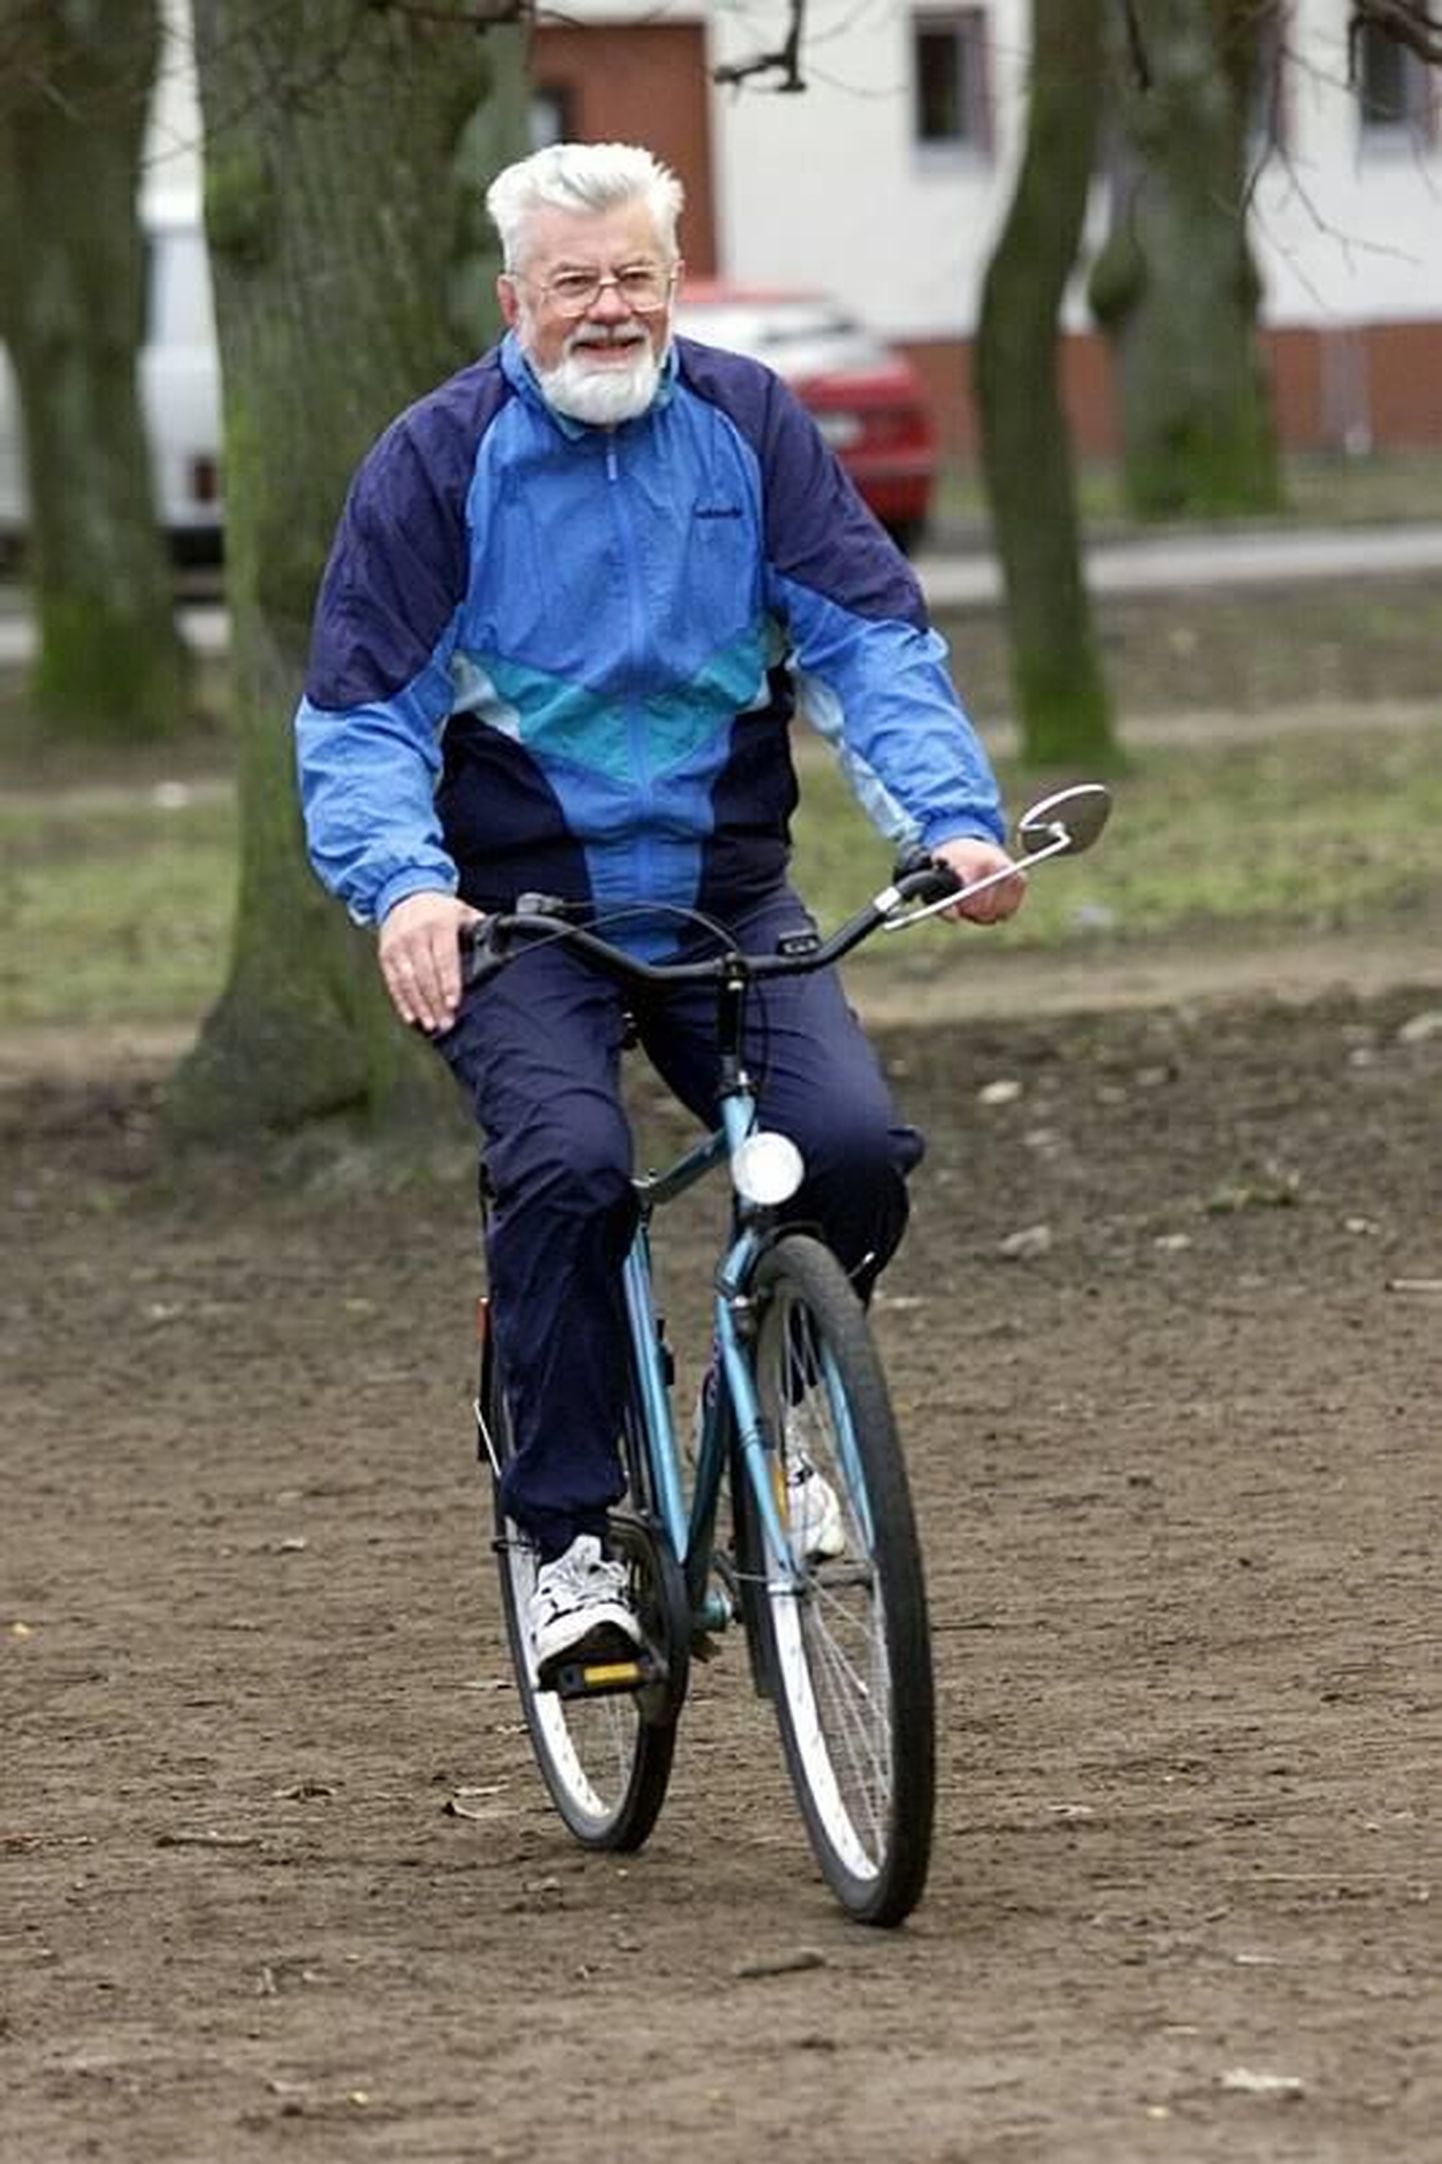 Atko-Meeme Viru oli ka Eesti karskusliikumise eestvedaja, kes propageeris tervislikke eluviise igal võimalusel. Professor Viru armastas muuhulgas ka igal hommikul jalgrattaga sõitmas käia.